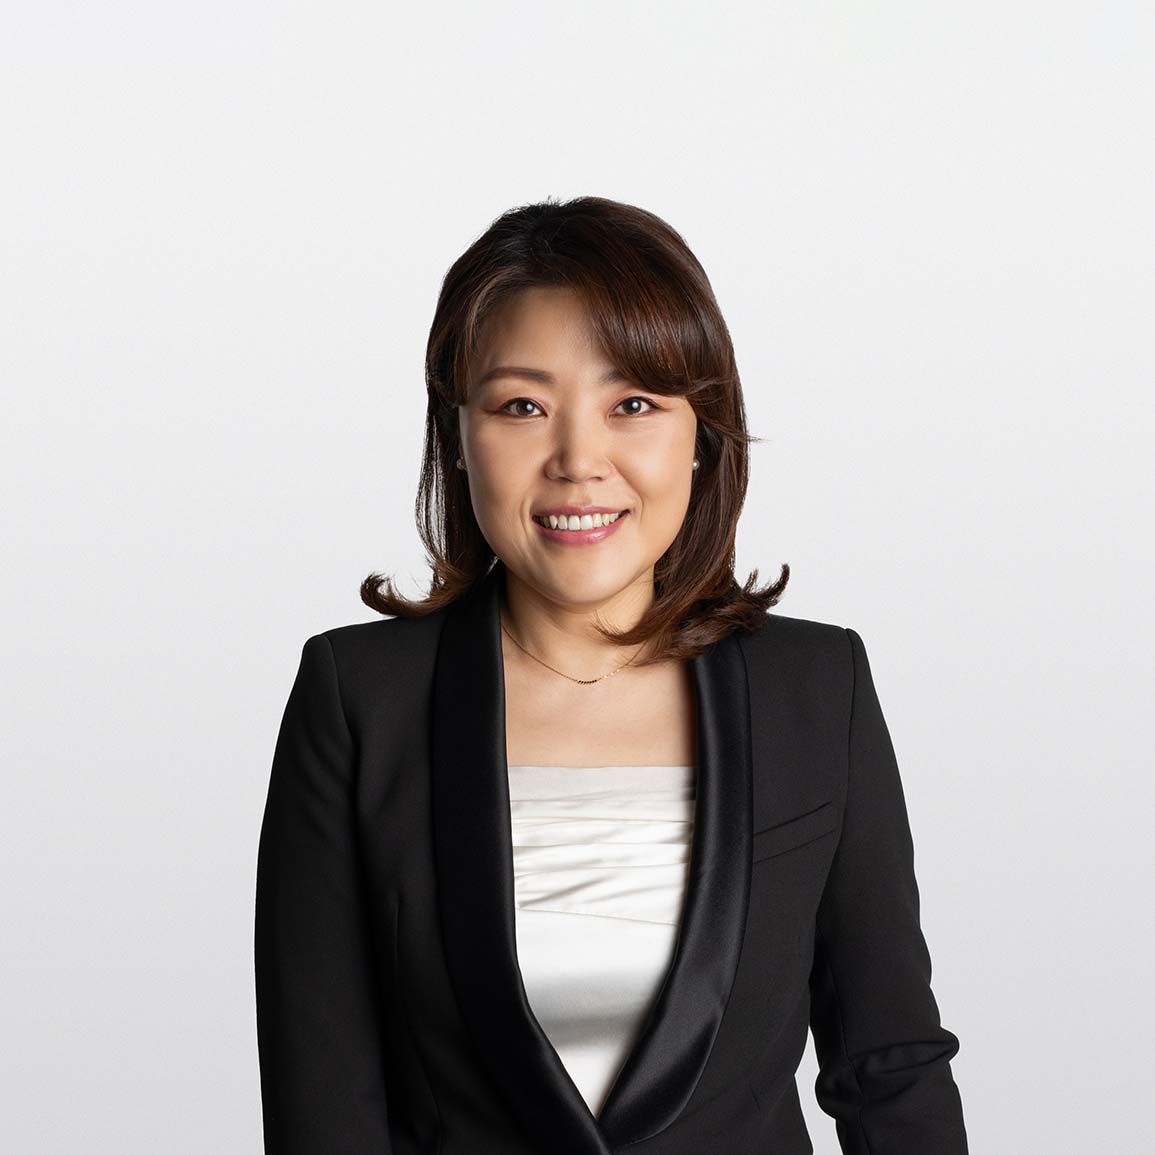 Image of Larysa Choi financial advisor on white background